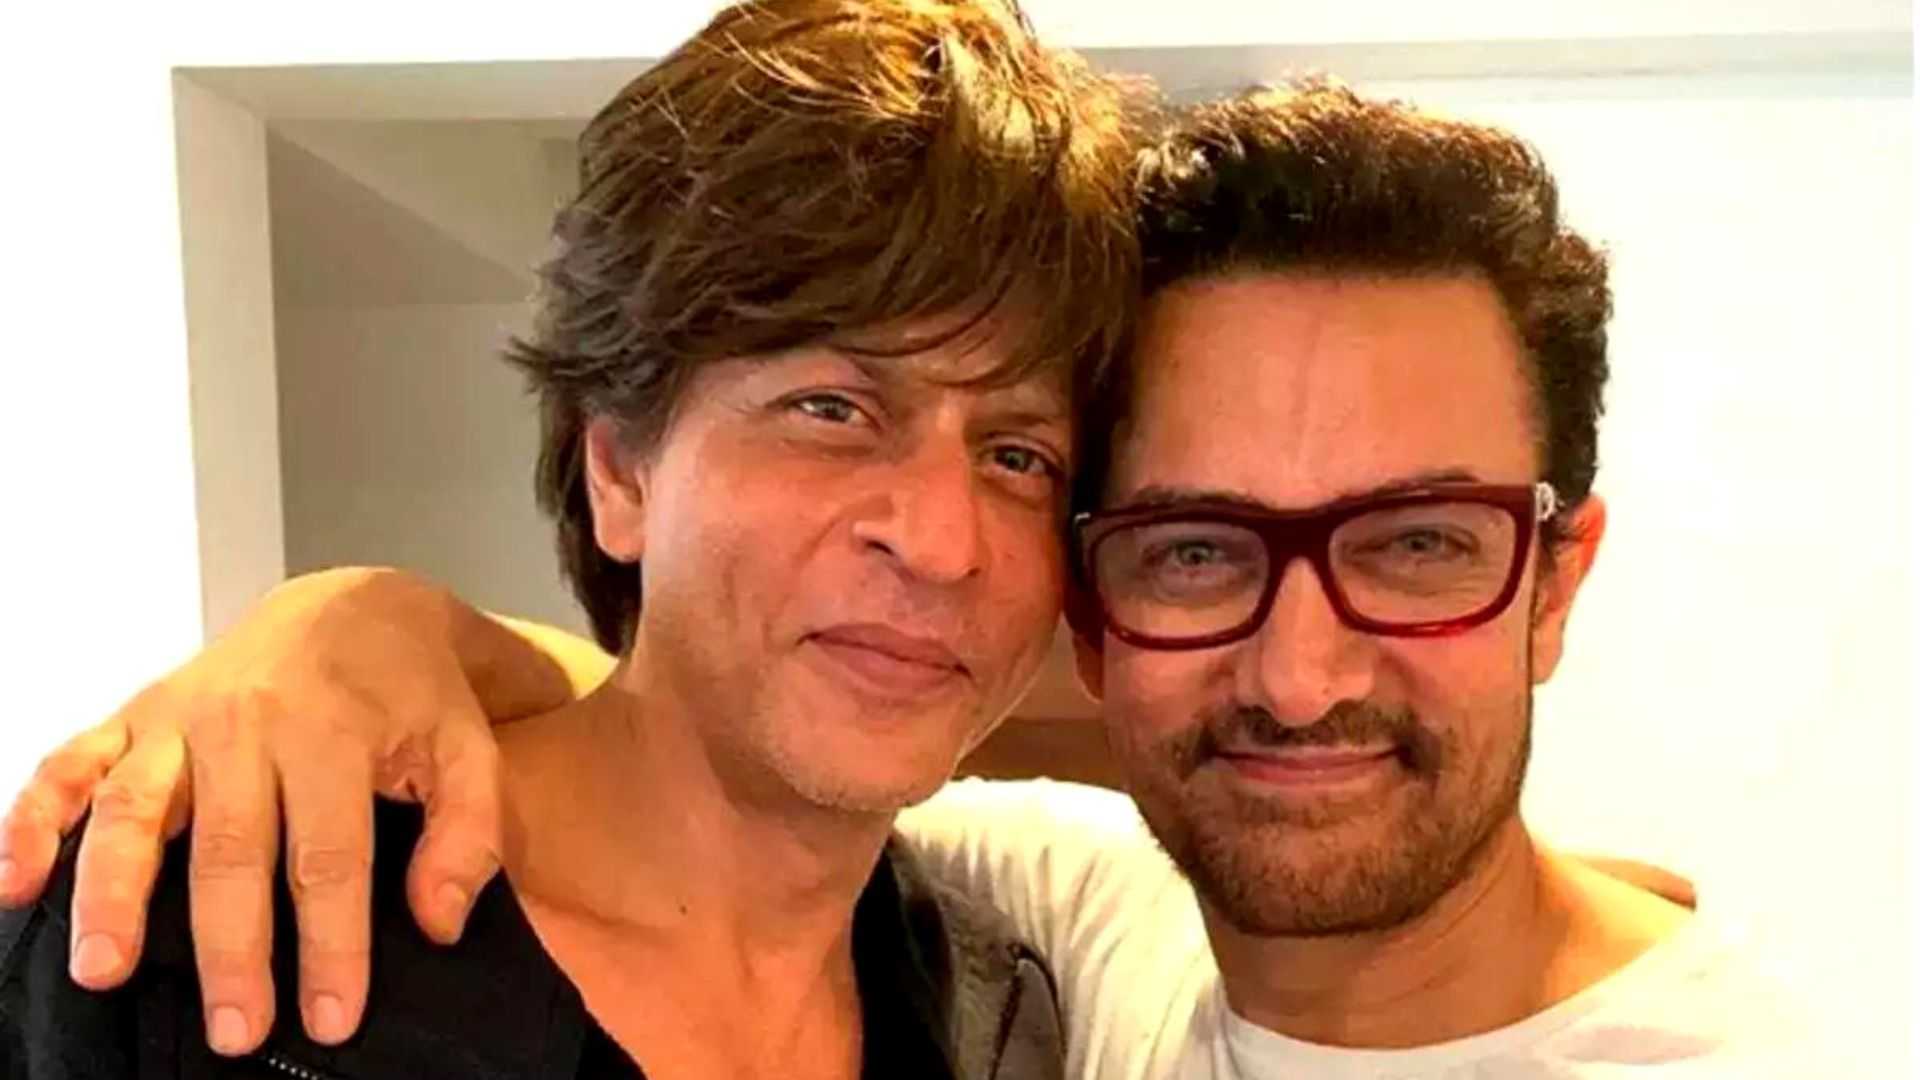 शाहरुख खान ने आमिर खान के जबड़े से छीना उनका प्रोजेक्ट, लोग बोले- पठान इफेक्ट!